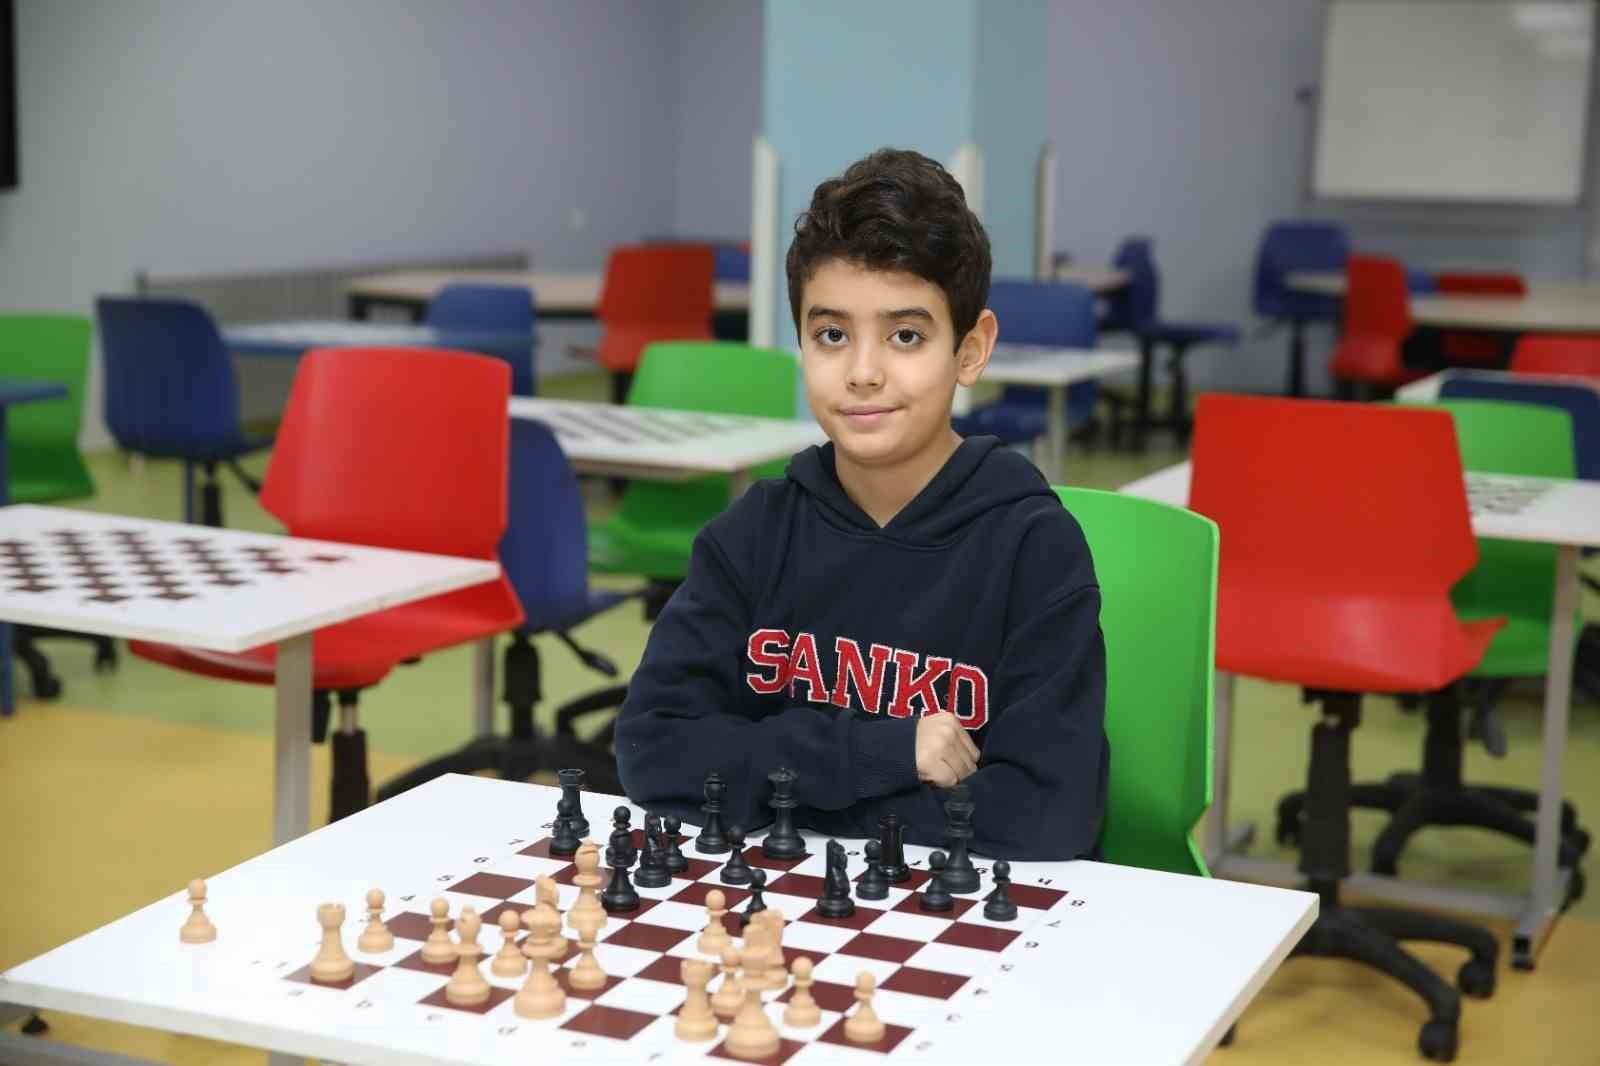 SANKO Okulları öğrencisi, satrançta il genelinde üçüncülük kazandı